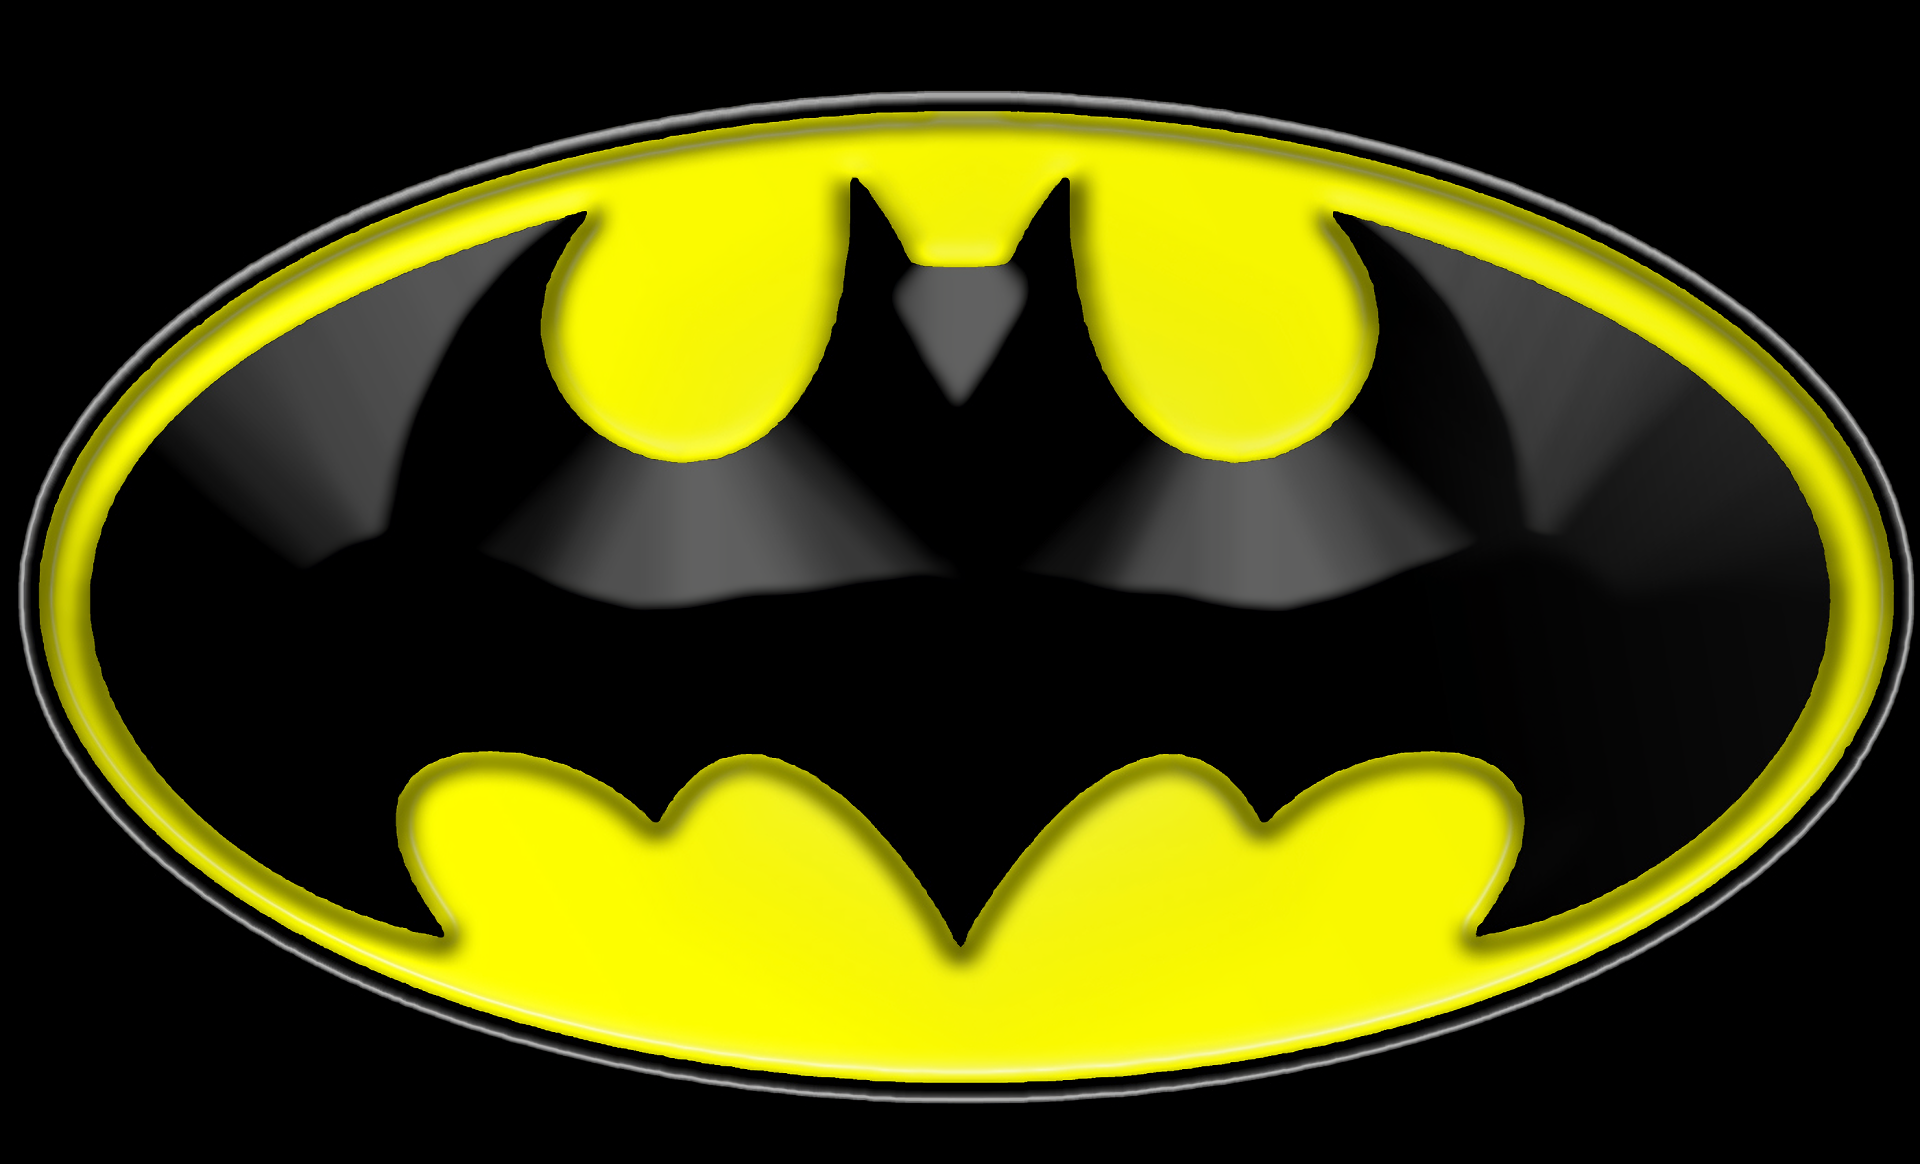 Batman Symbol HD Wallpaper And Background